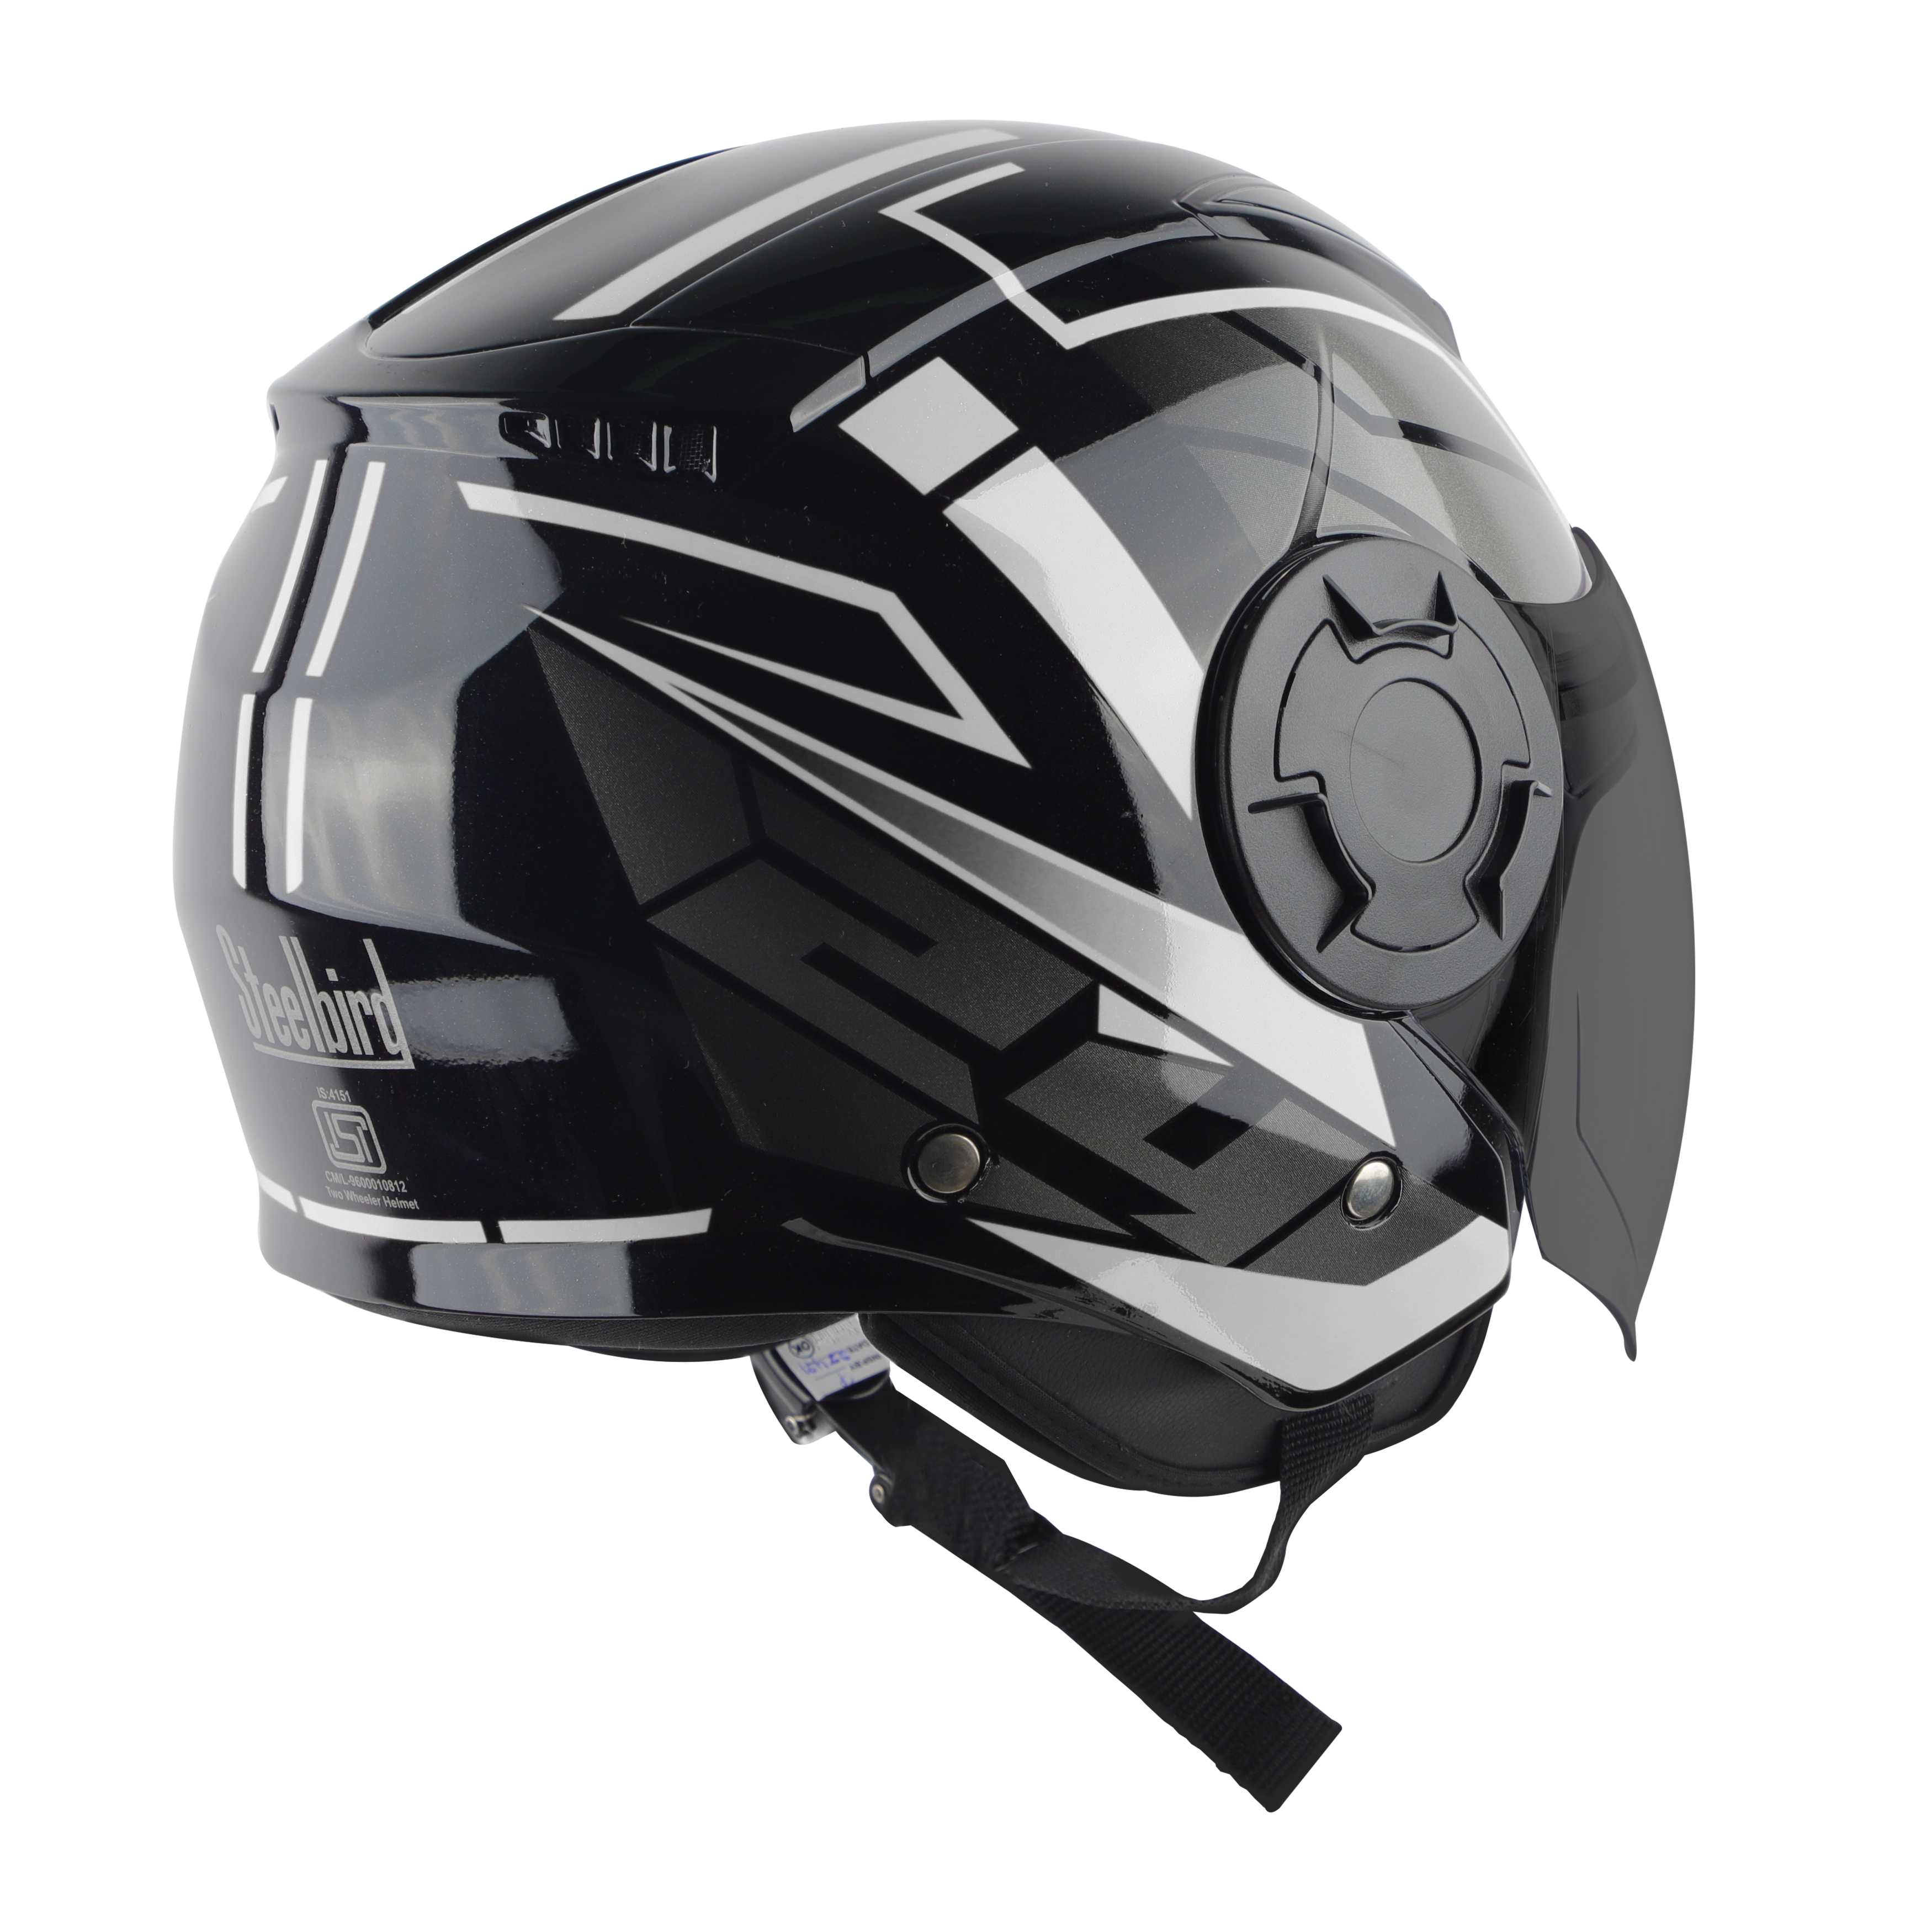 Steelbird SBH-31 Baron ISI Certified Open Face Helmet For Men And Women (Matt Black Grey With Smoke Visor)